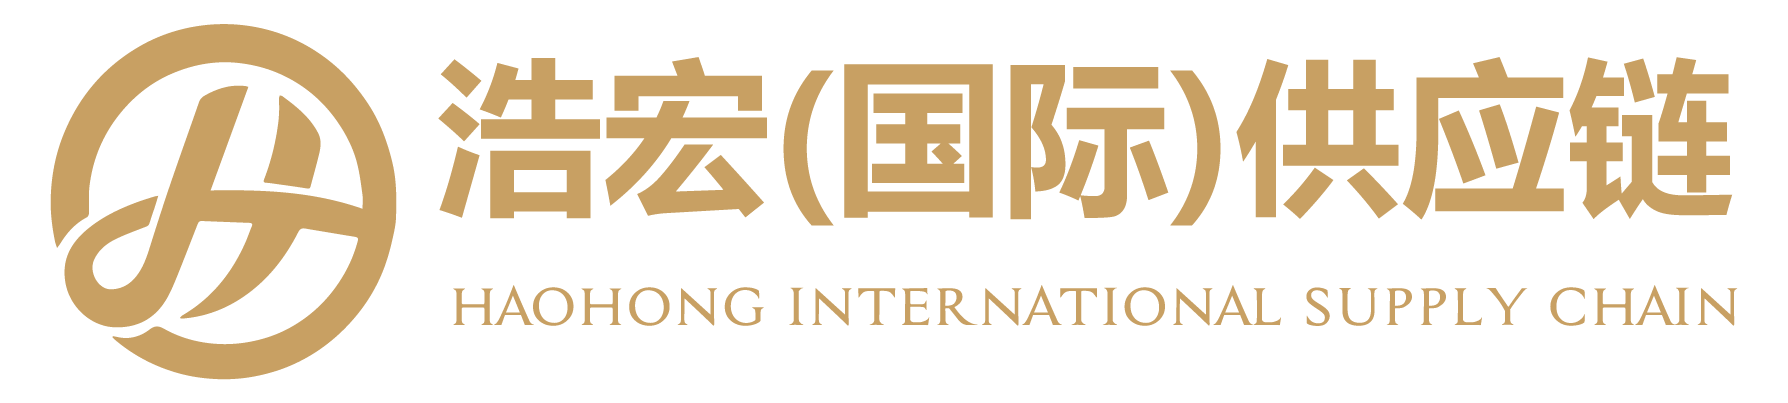 云南浩宏国际供应链管理有限公司官网